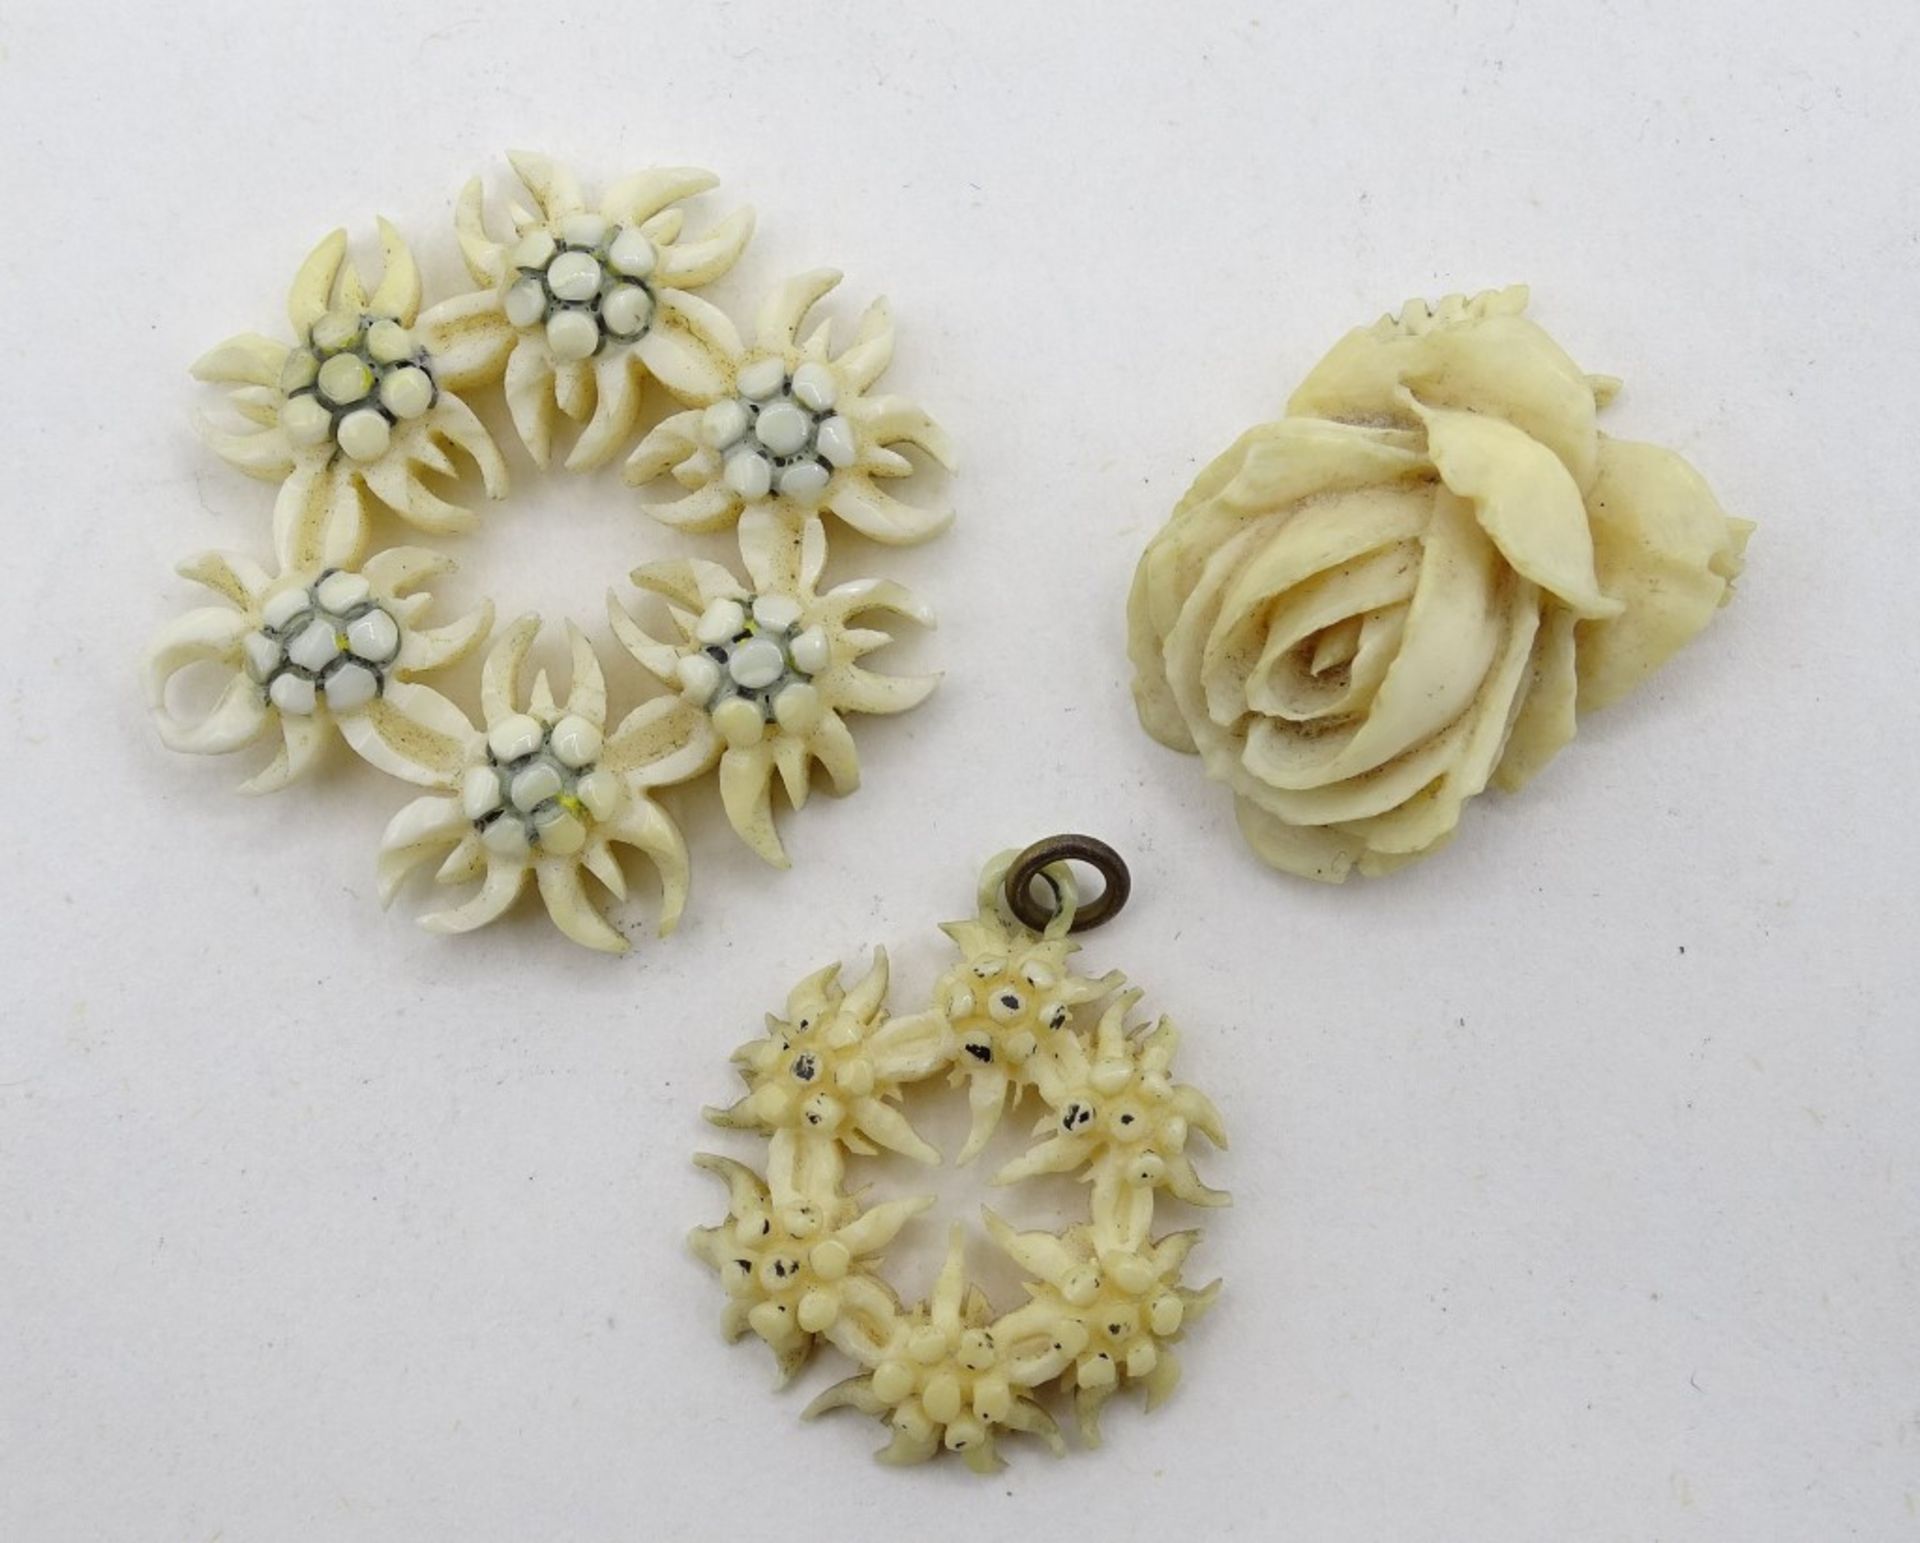 3 Teile alter Beinschmuck, Rose und 2 x Edelweiß, Ø 2 - 3,5 cm, mit Altersspuren, Öse der Rose gebr